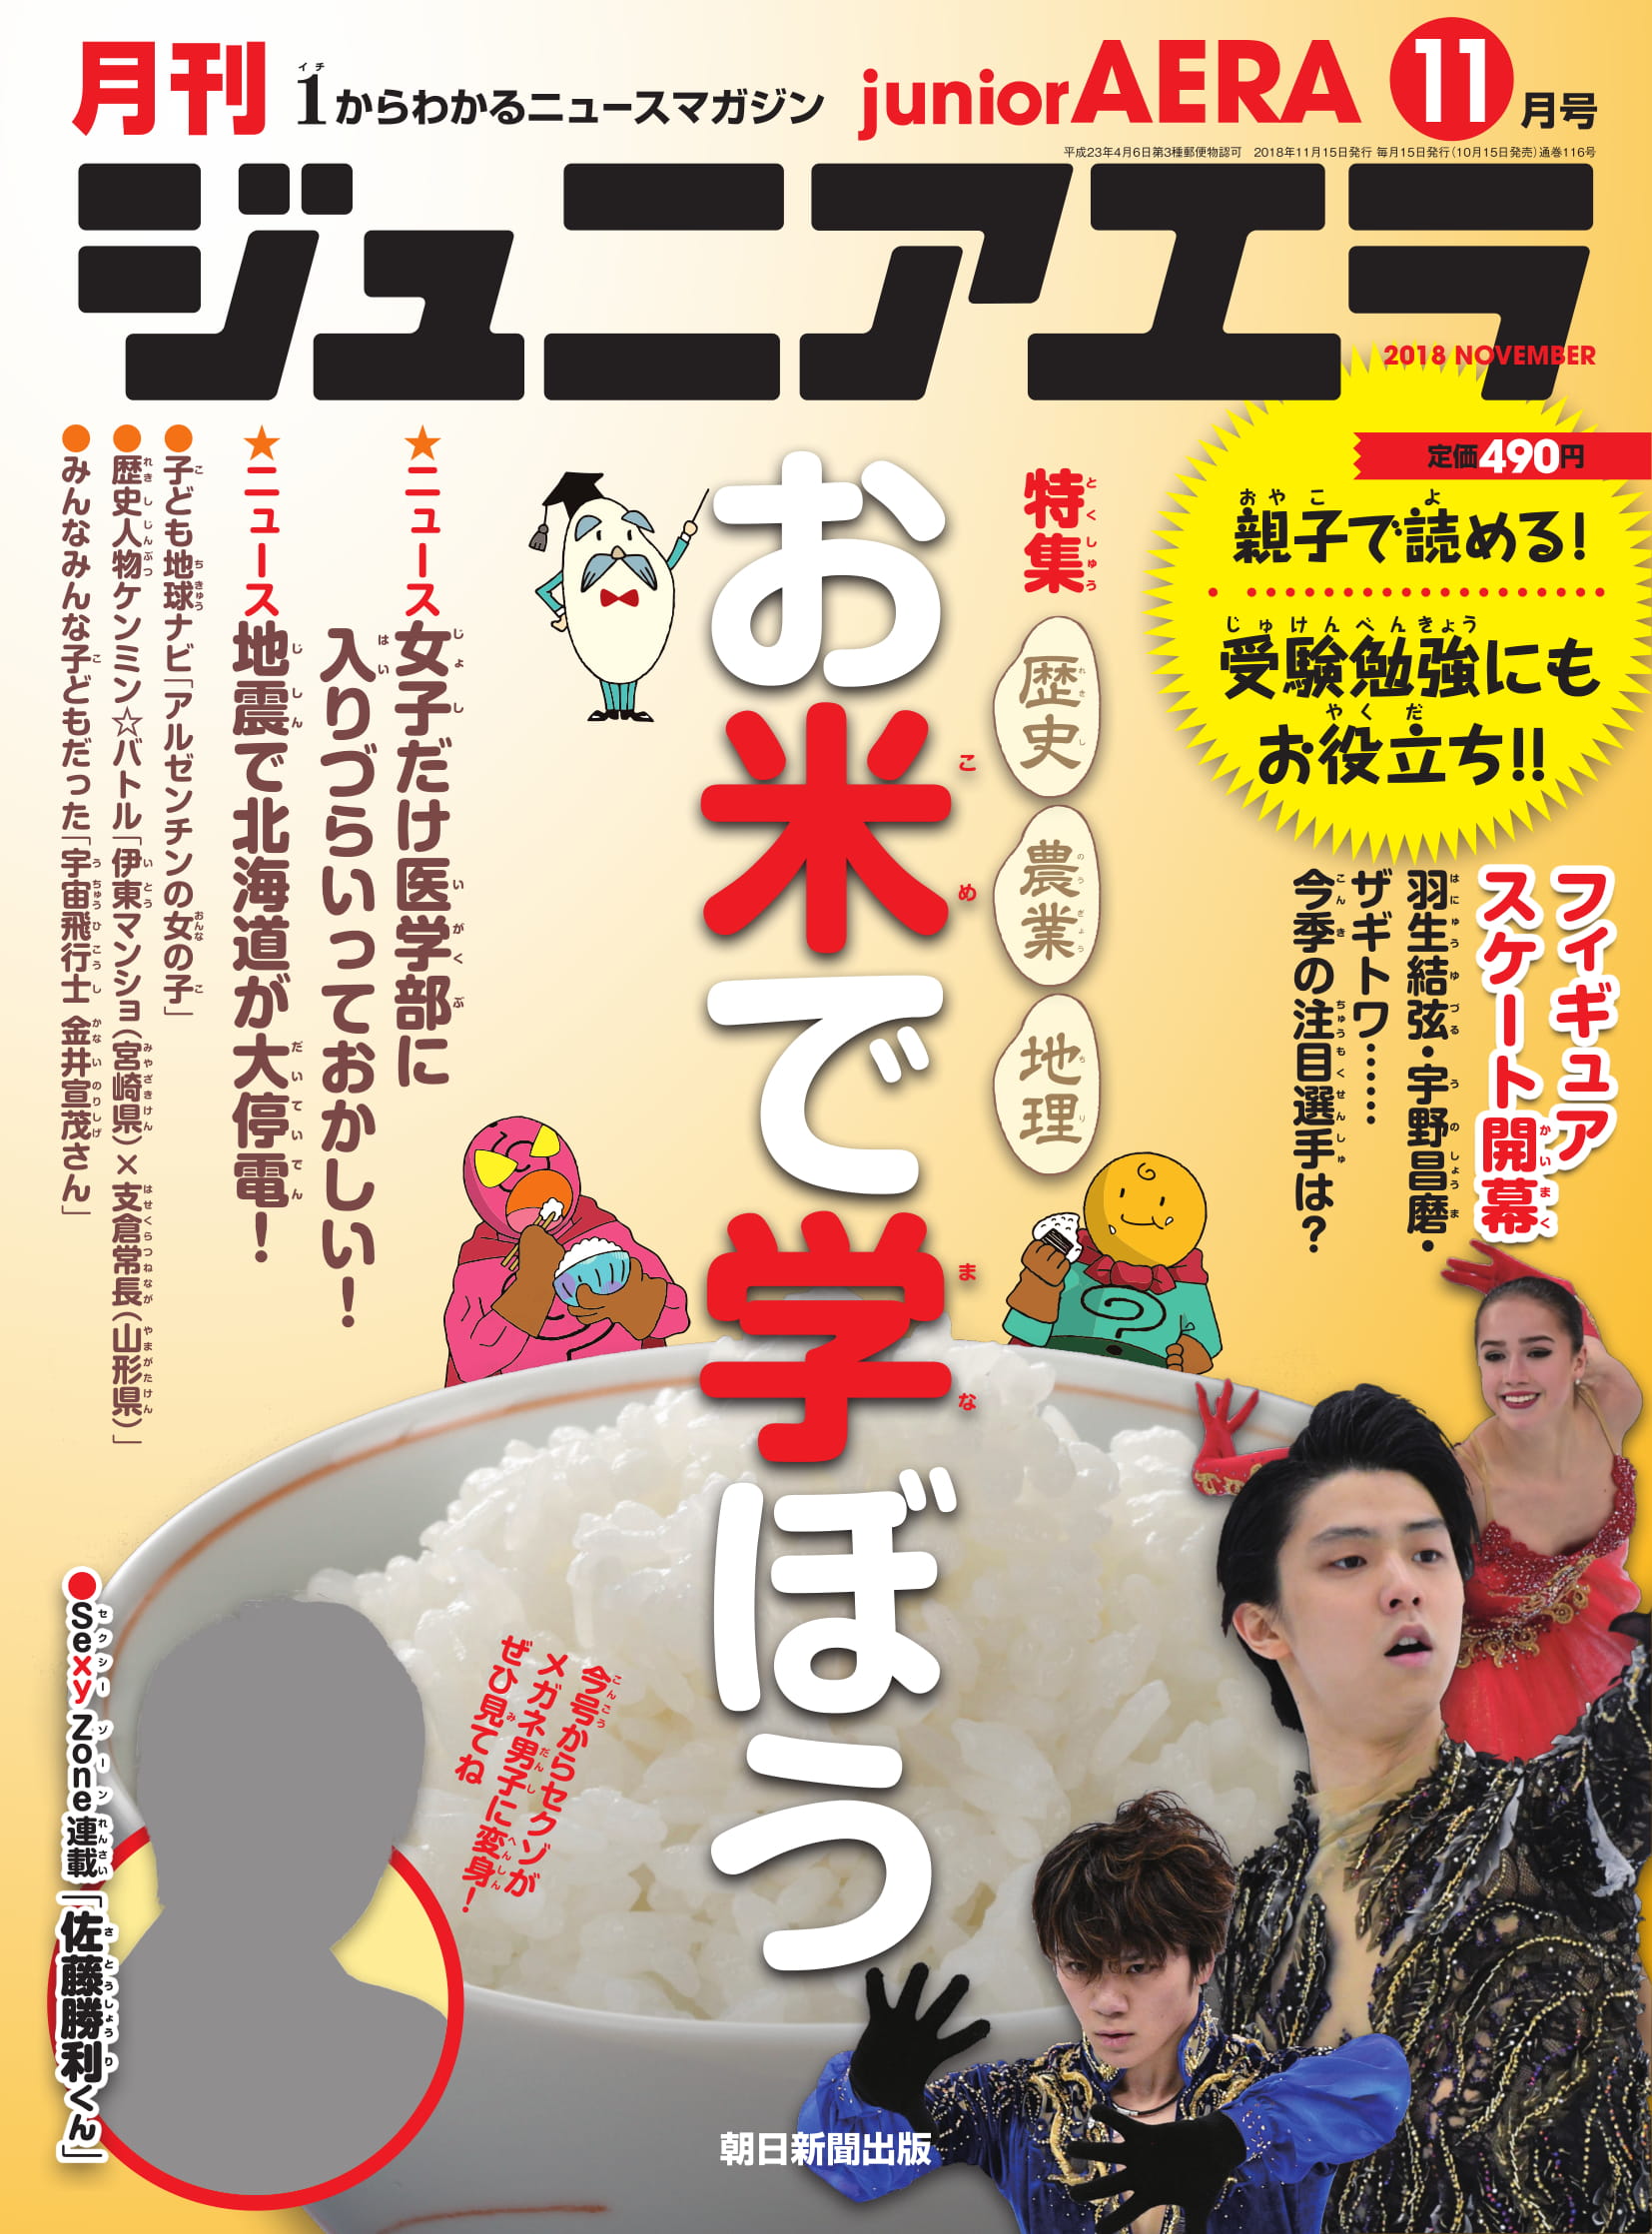 セクゾがメガネ男子姿で登場 ジュニアエラ11月号が10月15日発売 株式会社朝日新聞出版のプレスリリース